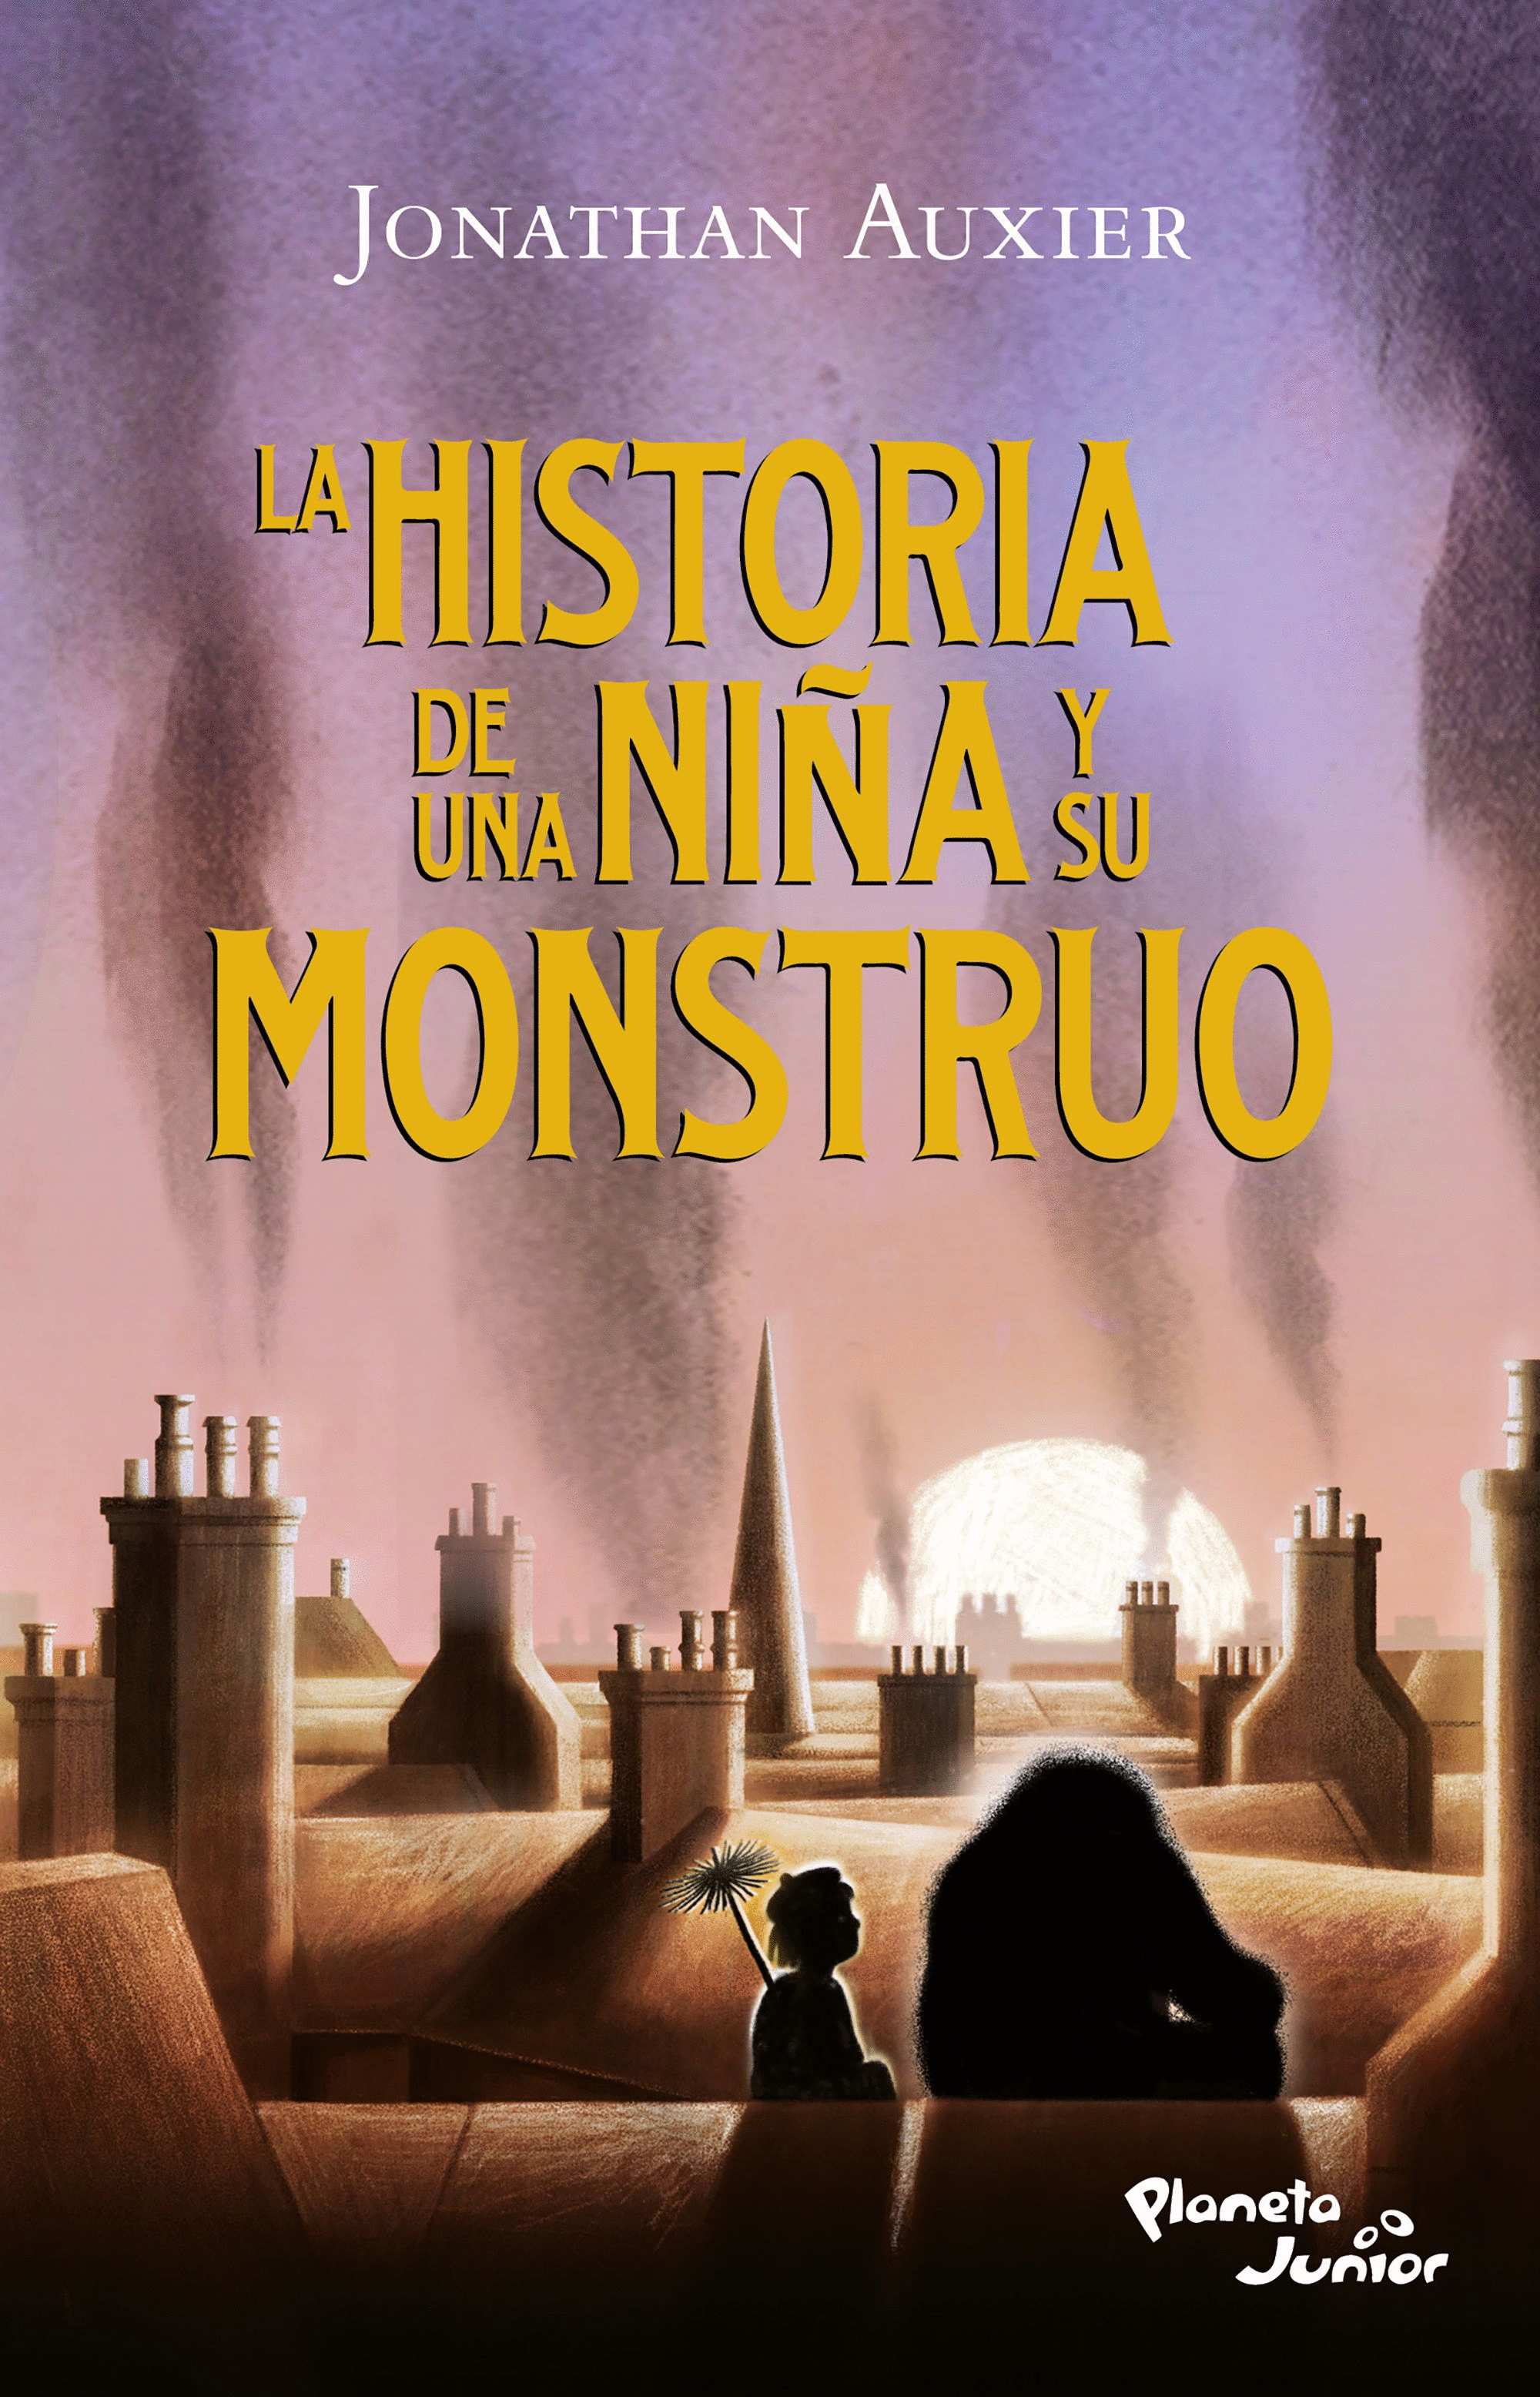 HISTORIA DE UNA NIÑA Y SU MONSTRUO, LA